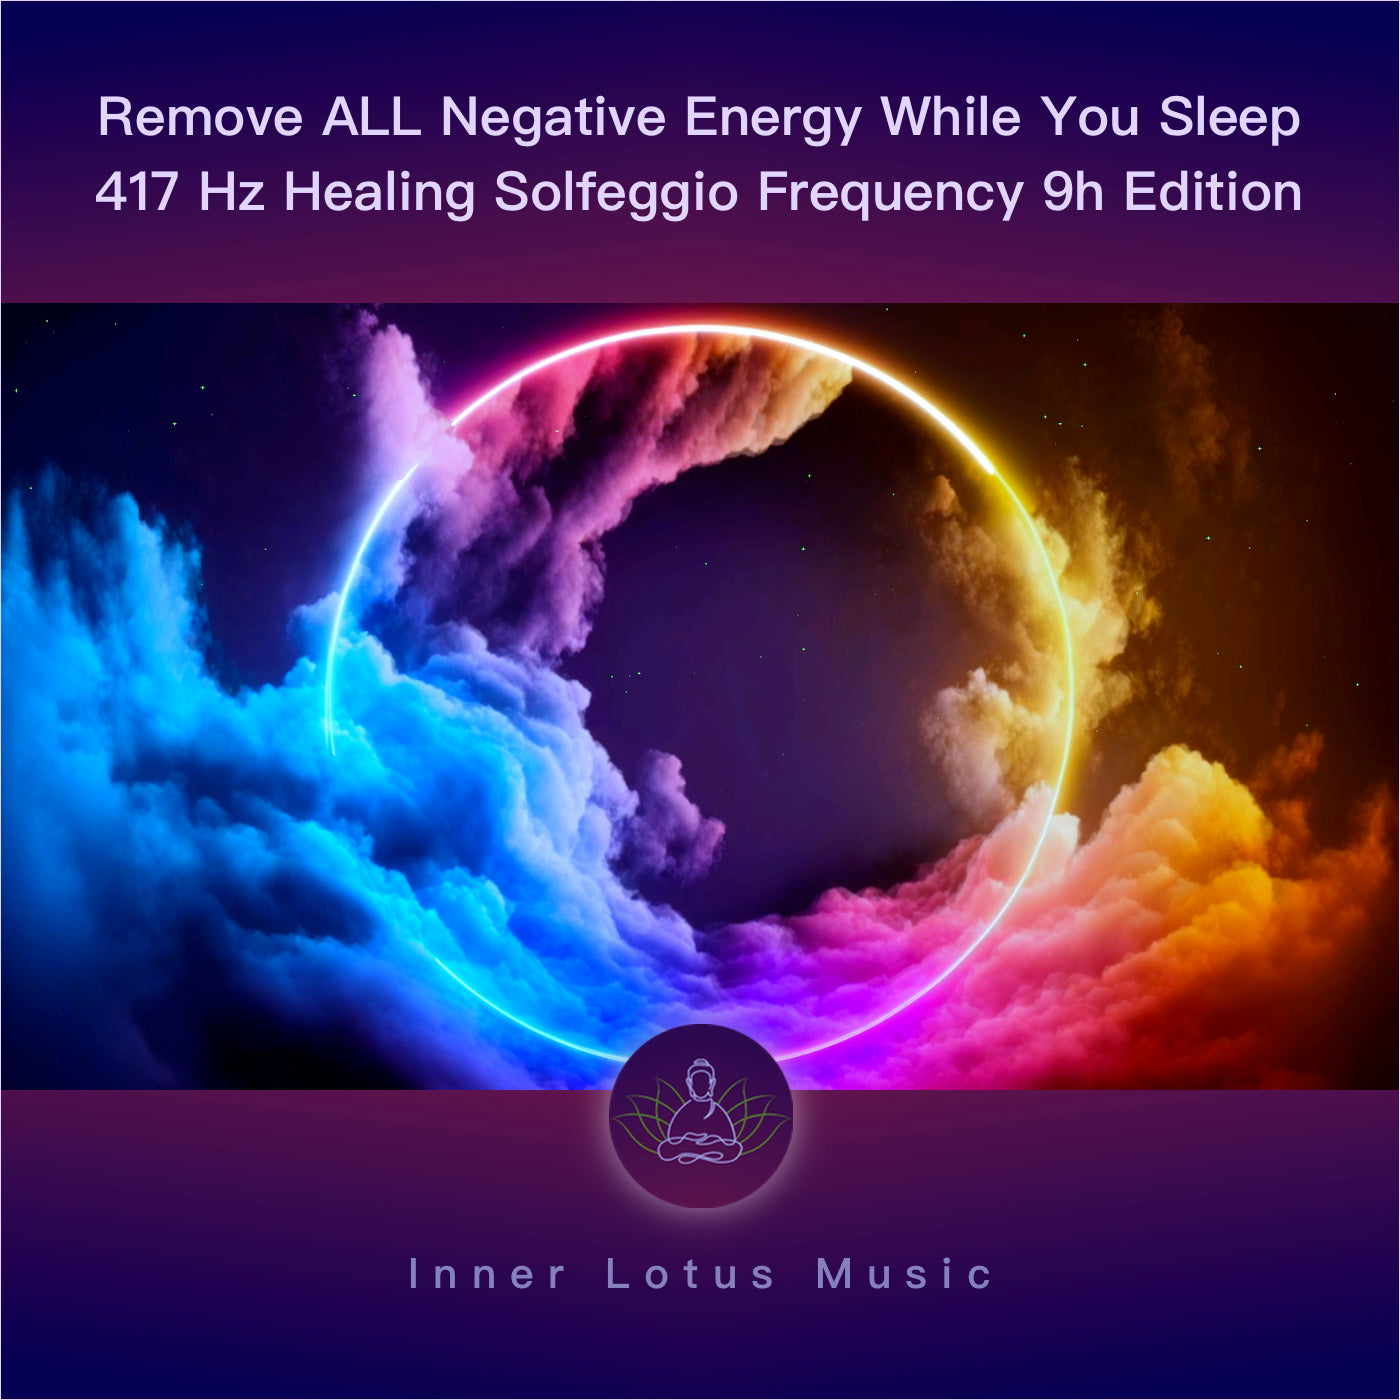 Elimina TODA Energía Negativa Mientras Duermes | Música Curativa Energética 417Hz | Edición 9h